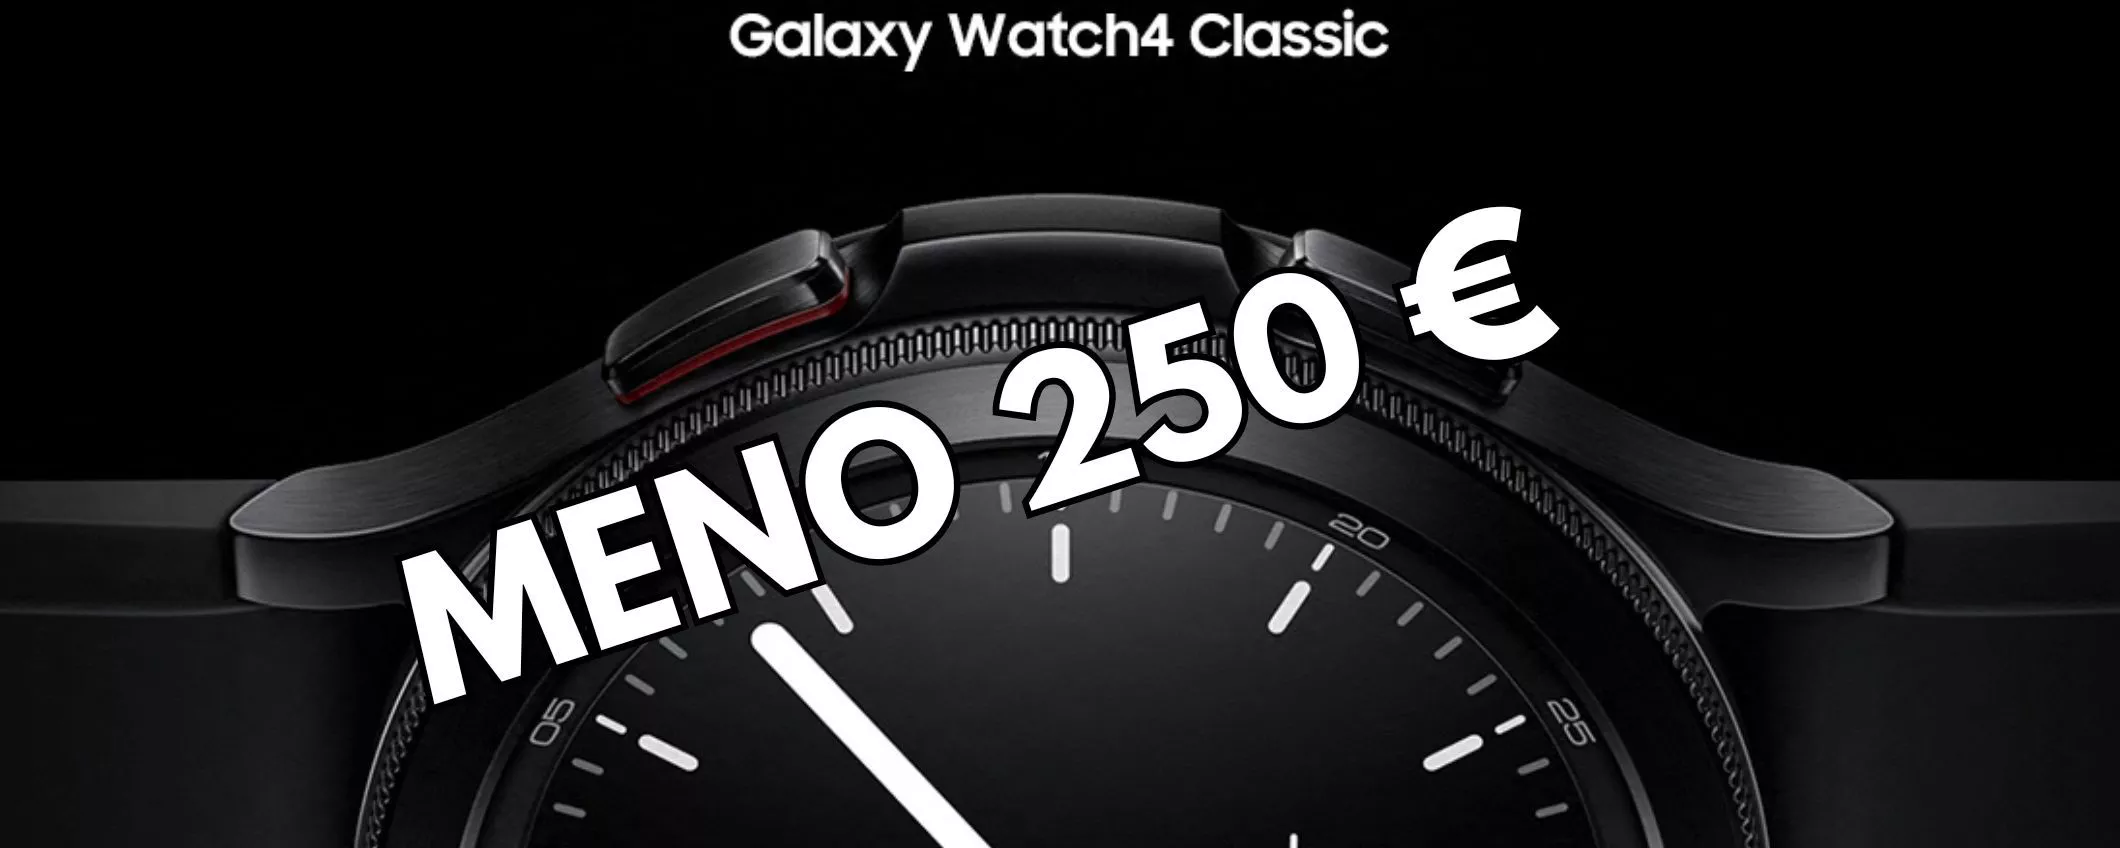 Samsung Galaxy Watch4 Classic 46mm, il prezzo precipita sempre più in basso! MENO 250 euro!